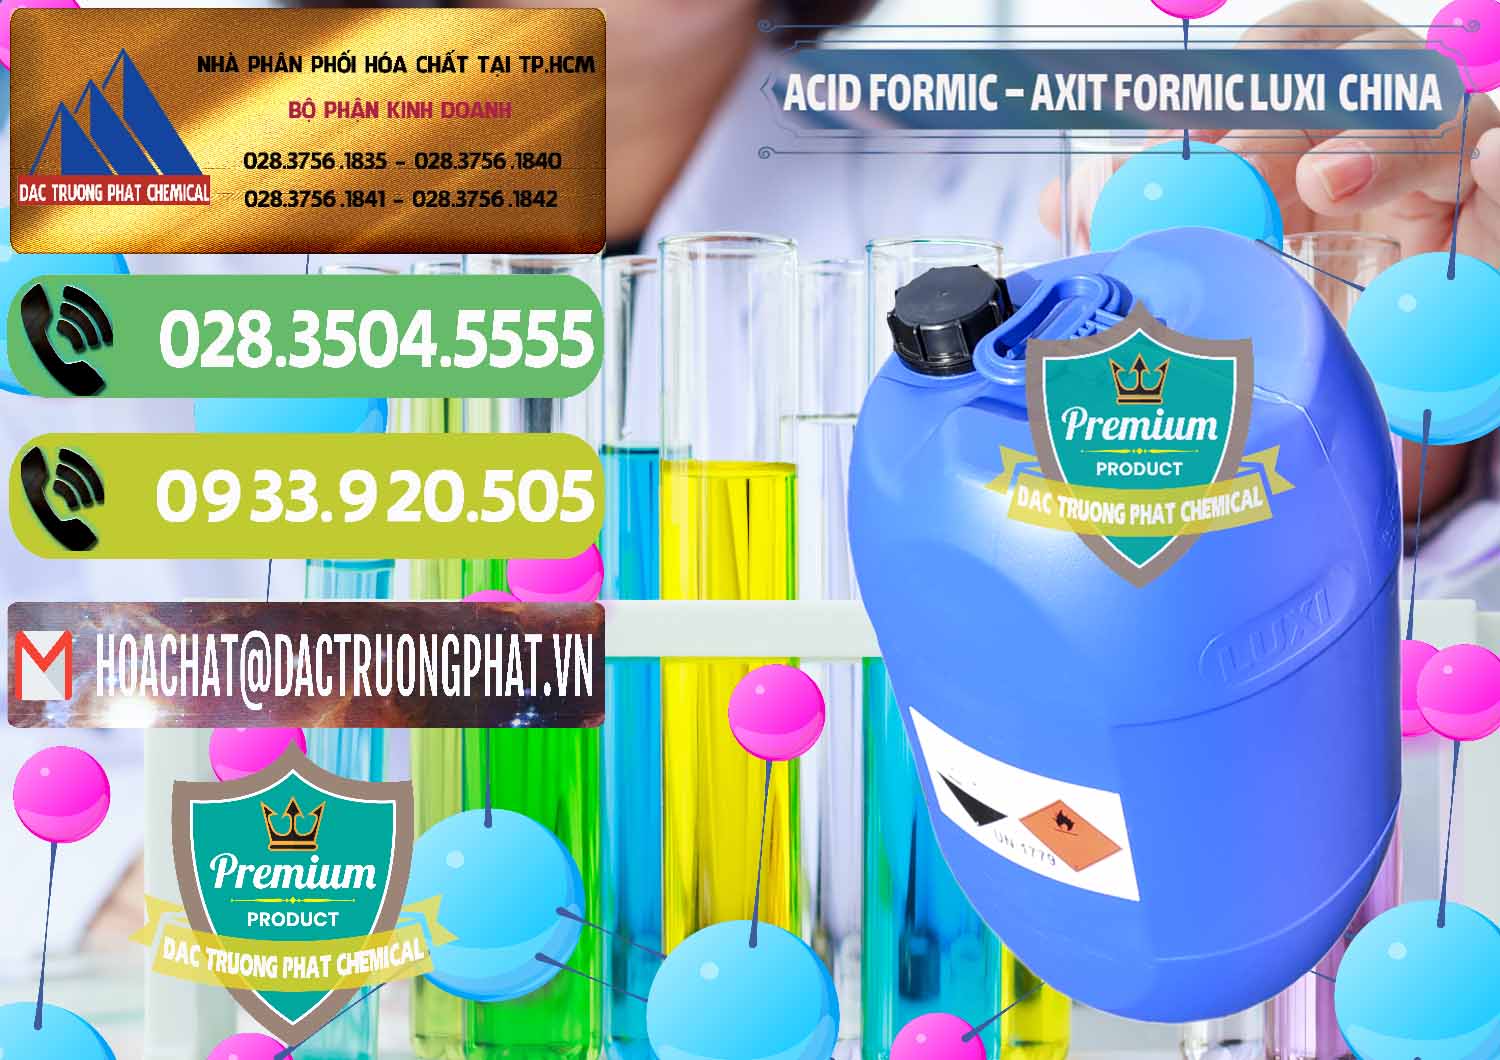 Nhà cung cấp & bán Acid Formic - Axit Formic Luxi Trung Quốc China - 0029 - Cty kinh doanh và cung cấp hóa chất tại TP.HCM - hoachatmientay.vn